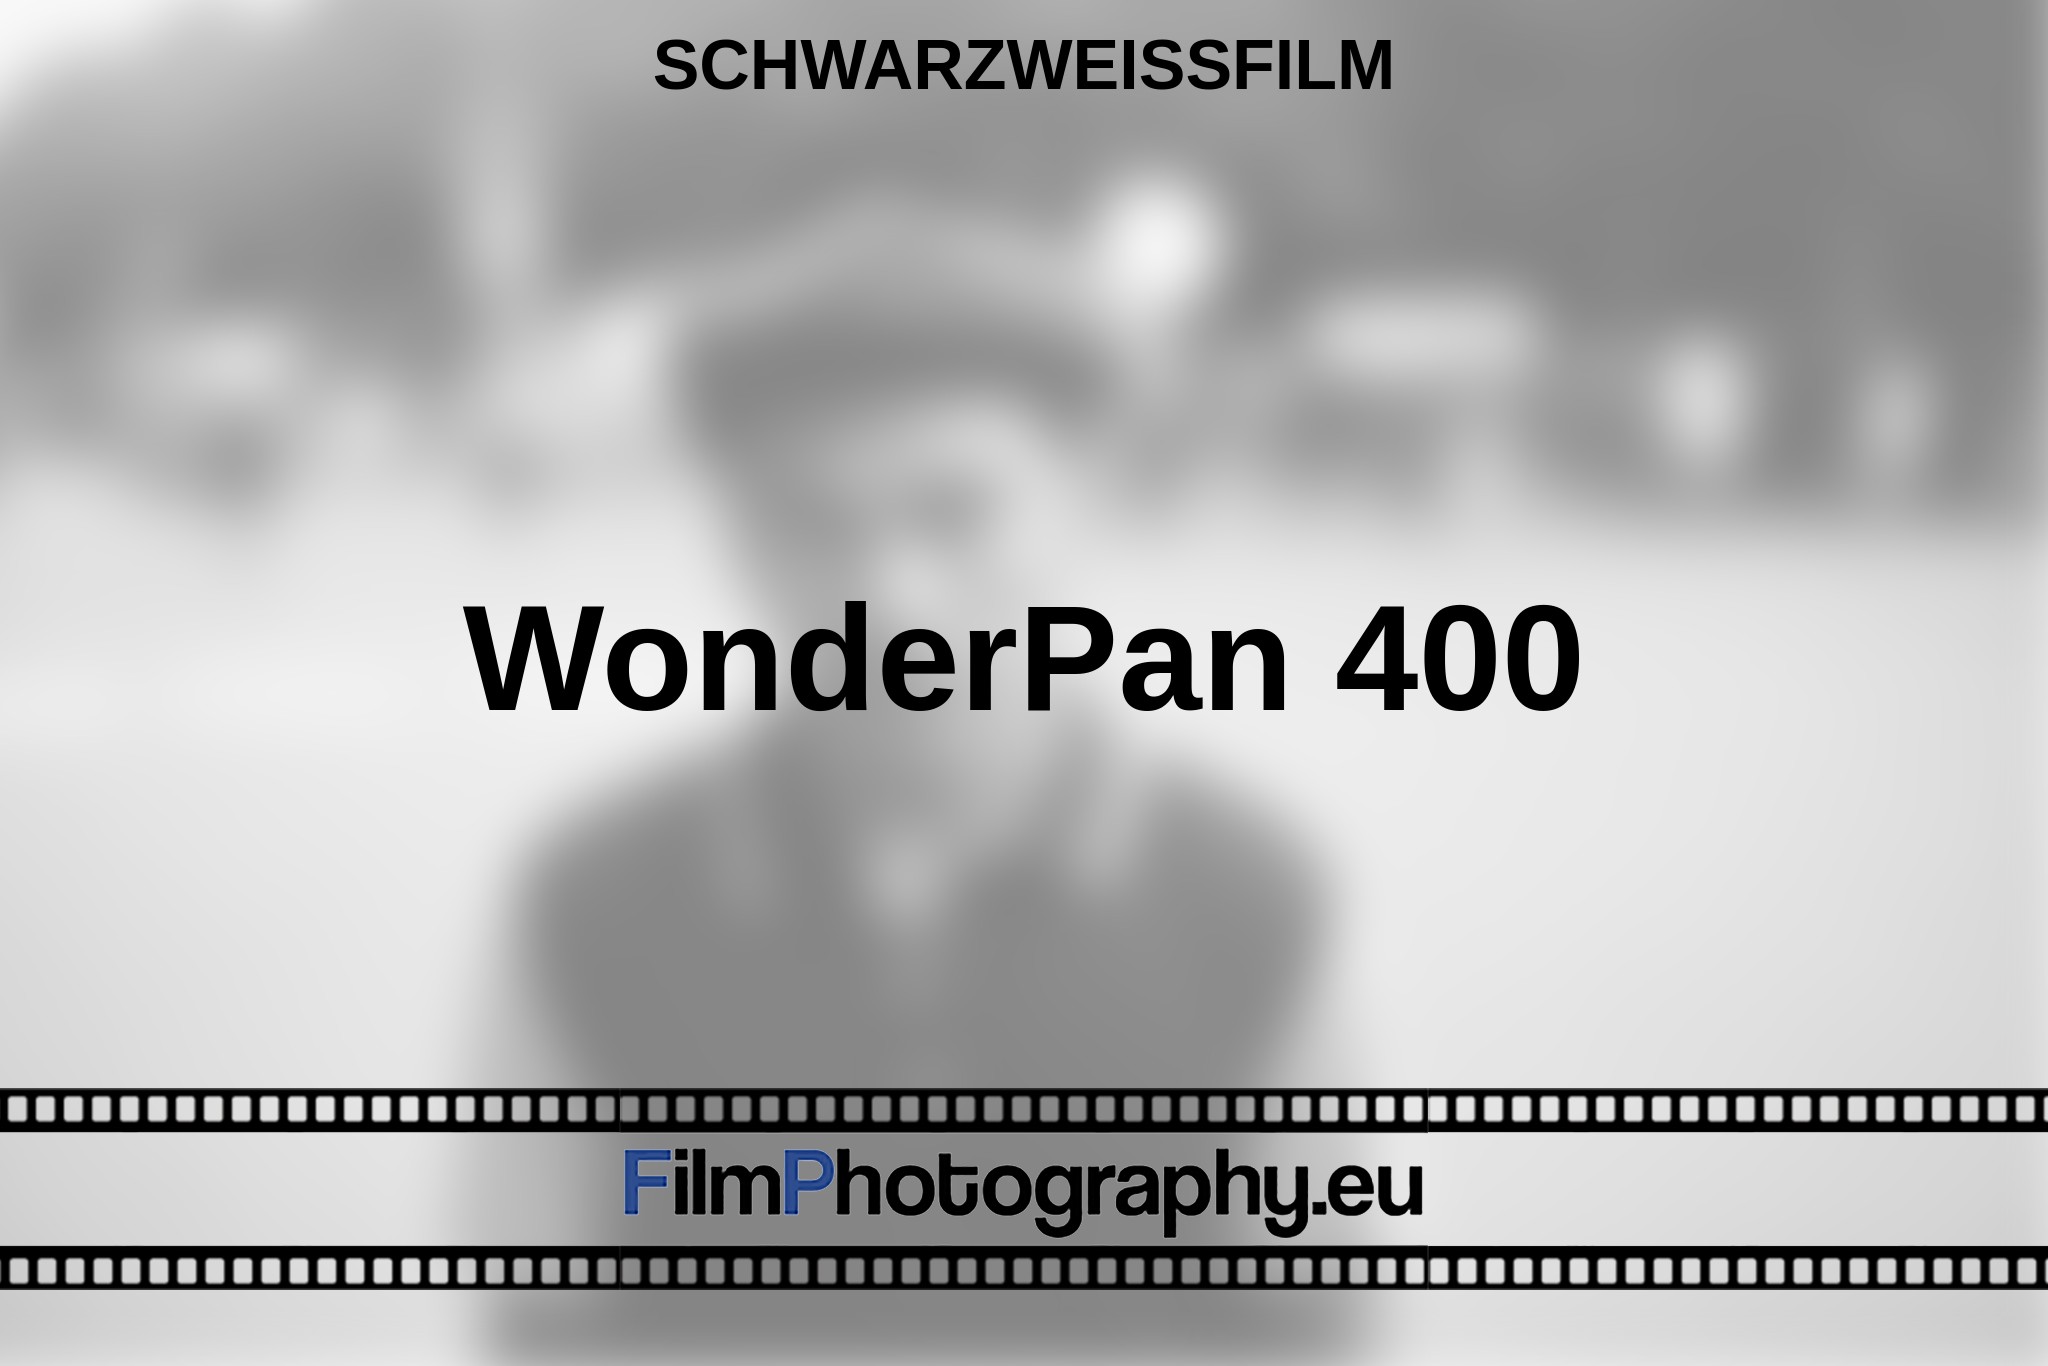 wonderpan-400-schwarzweißfilm-bnv.jpg